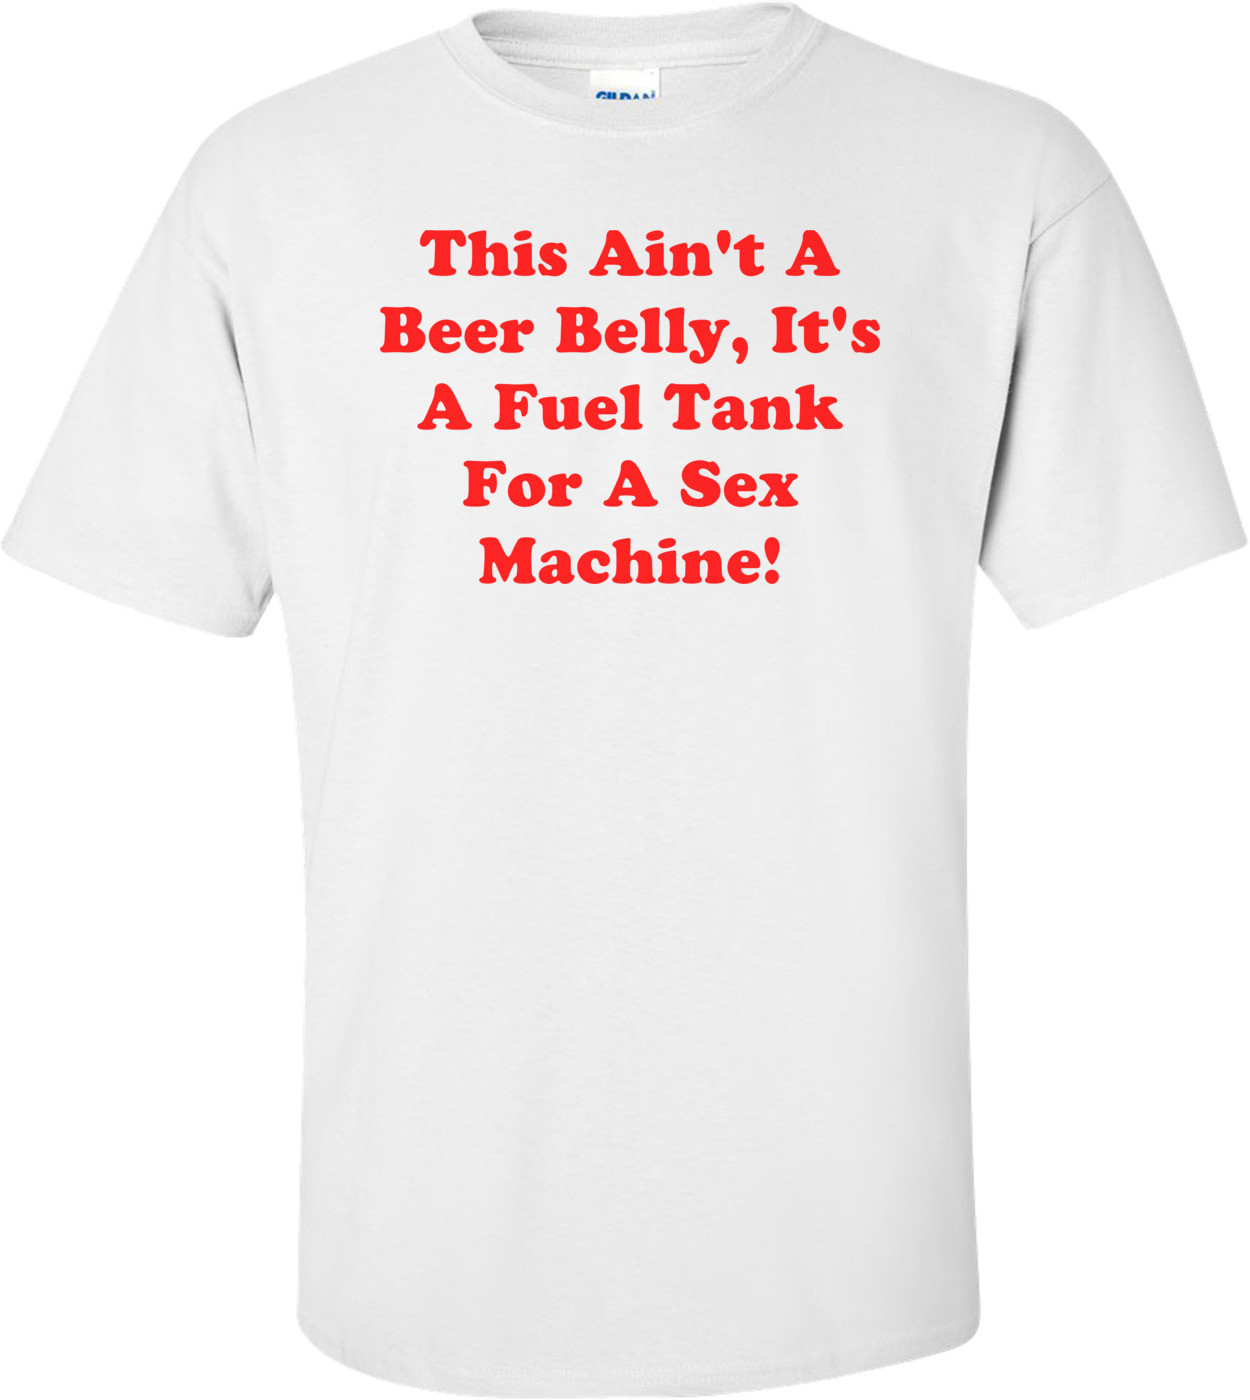 This Ain't A Beer Belly, It's A Fuel Tank For A Sex Machine!